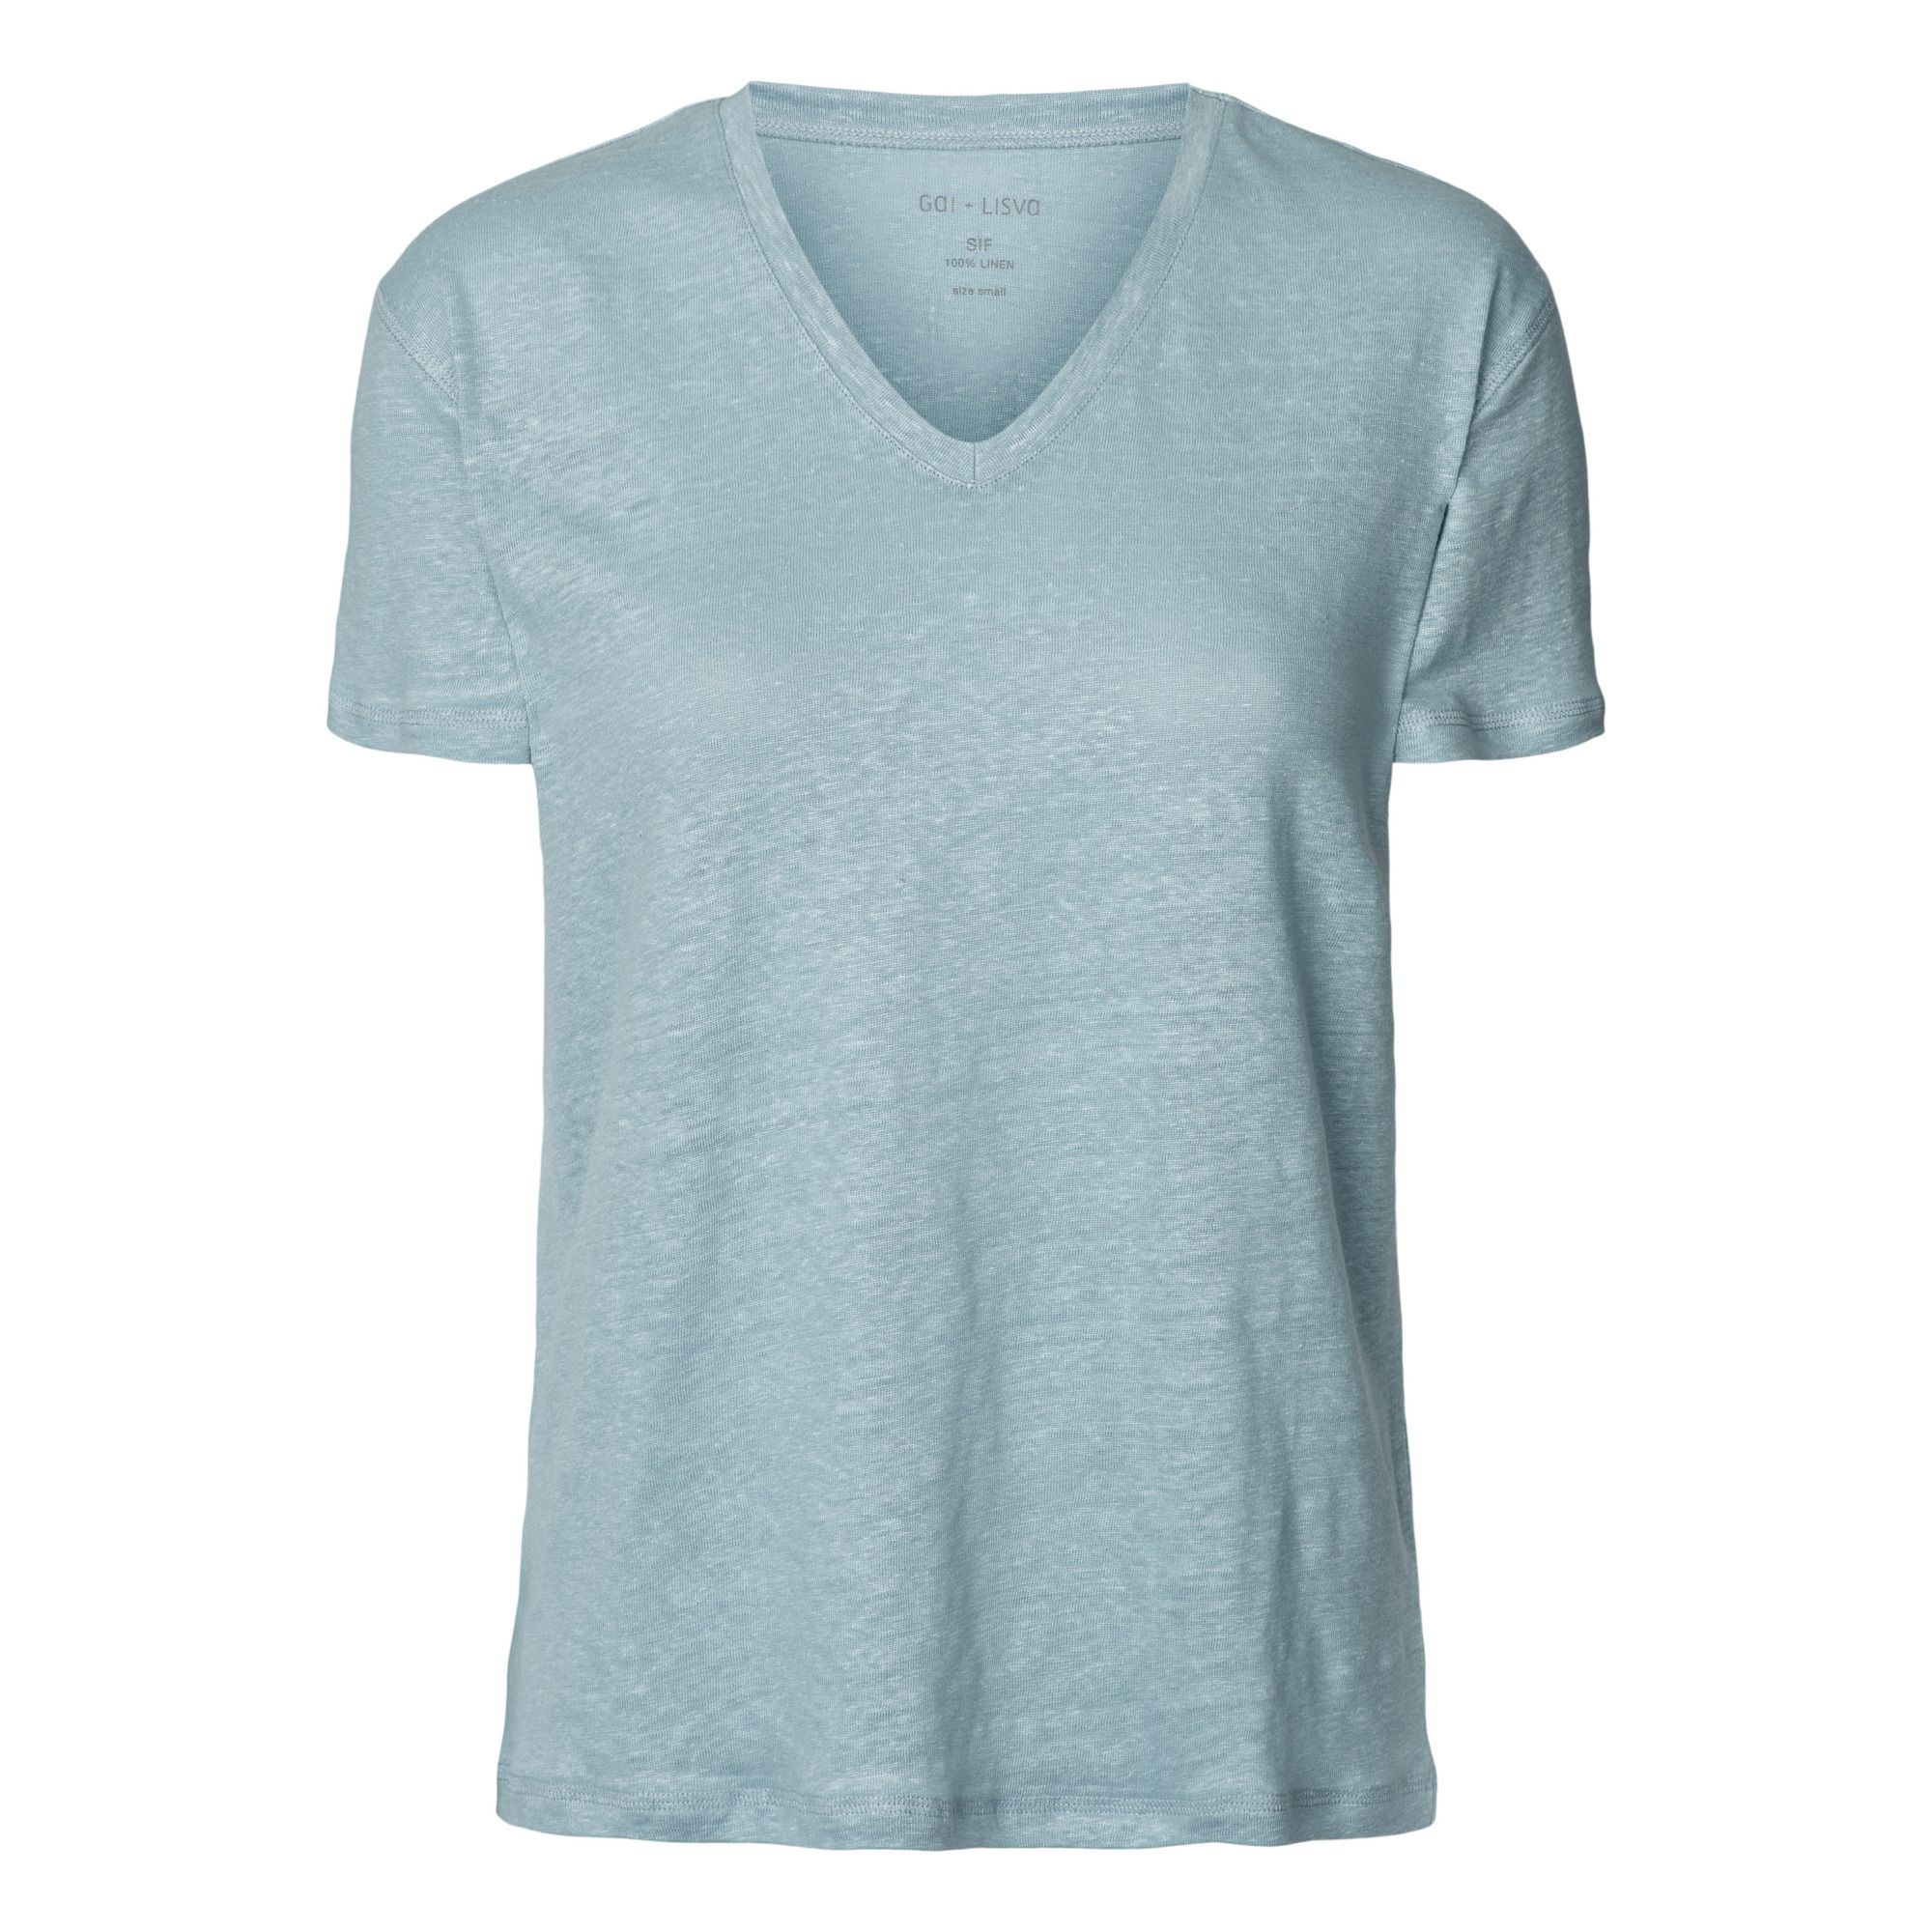 GAI+LISVA - T-shirt Sif Lin - Femme - Bleu